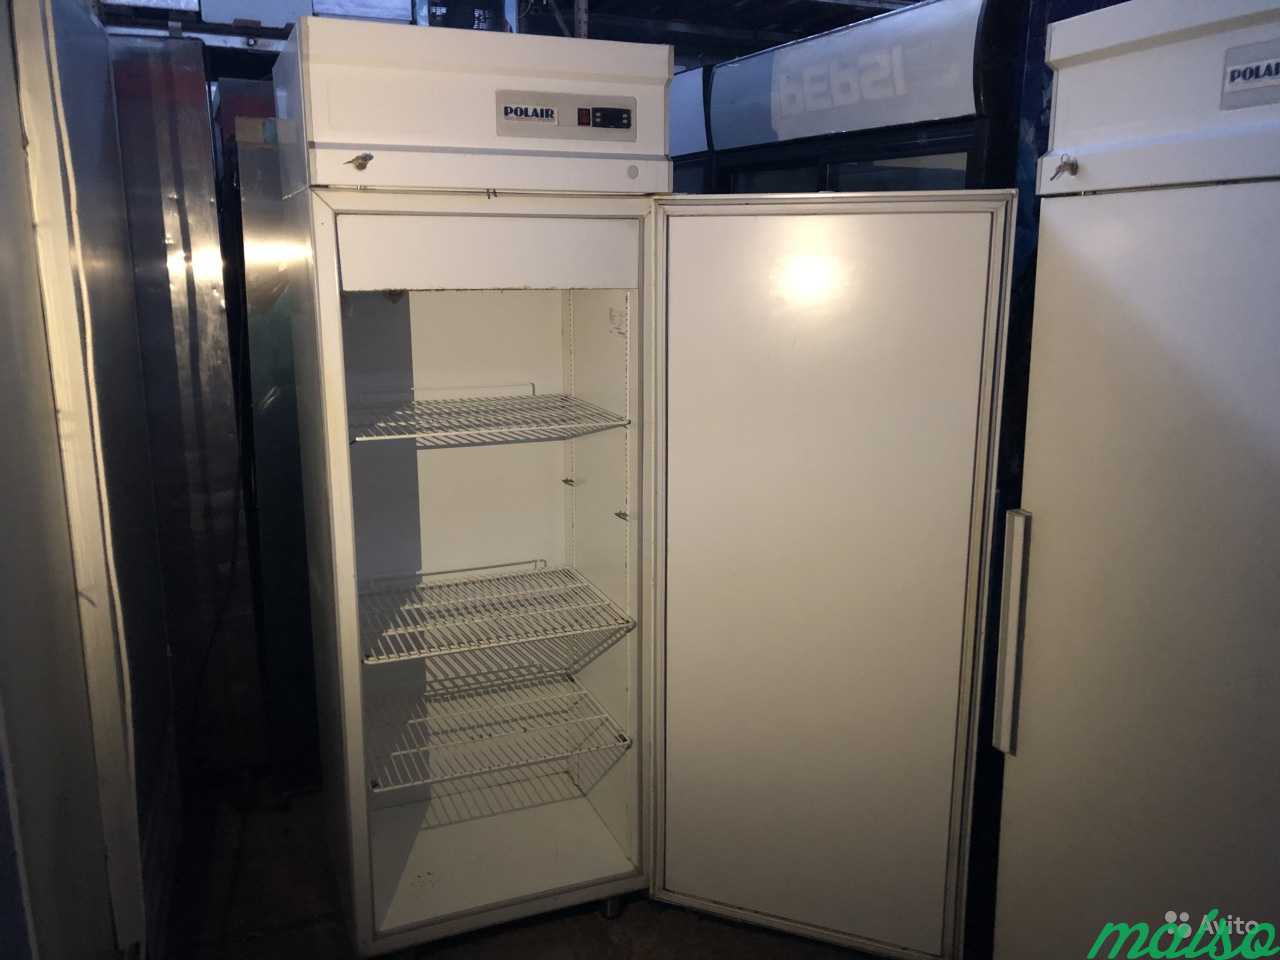 Холодильный морозильный Polair cb105 s